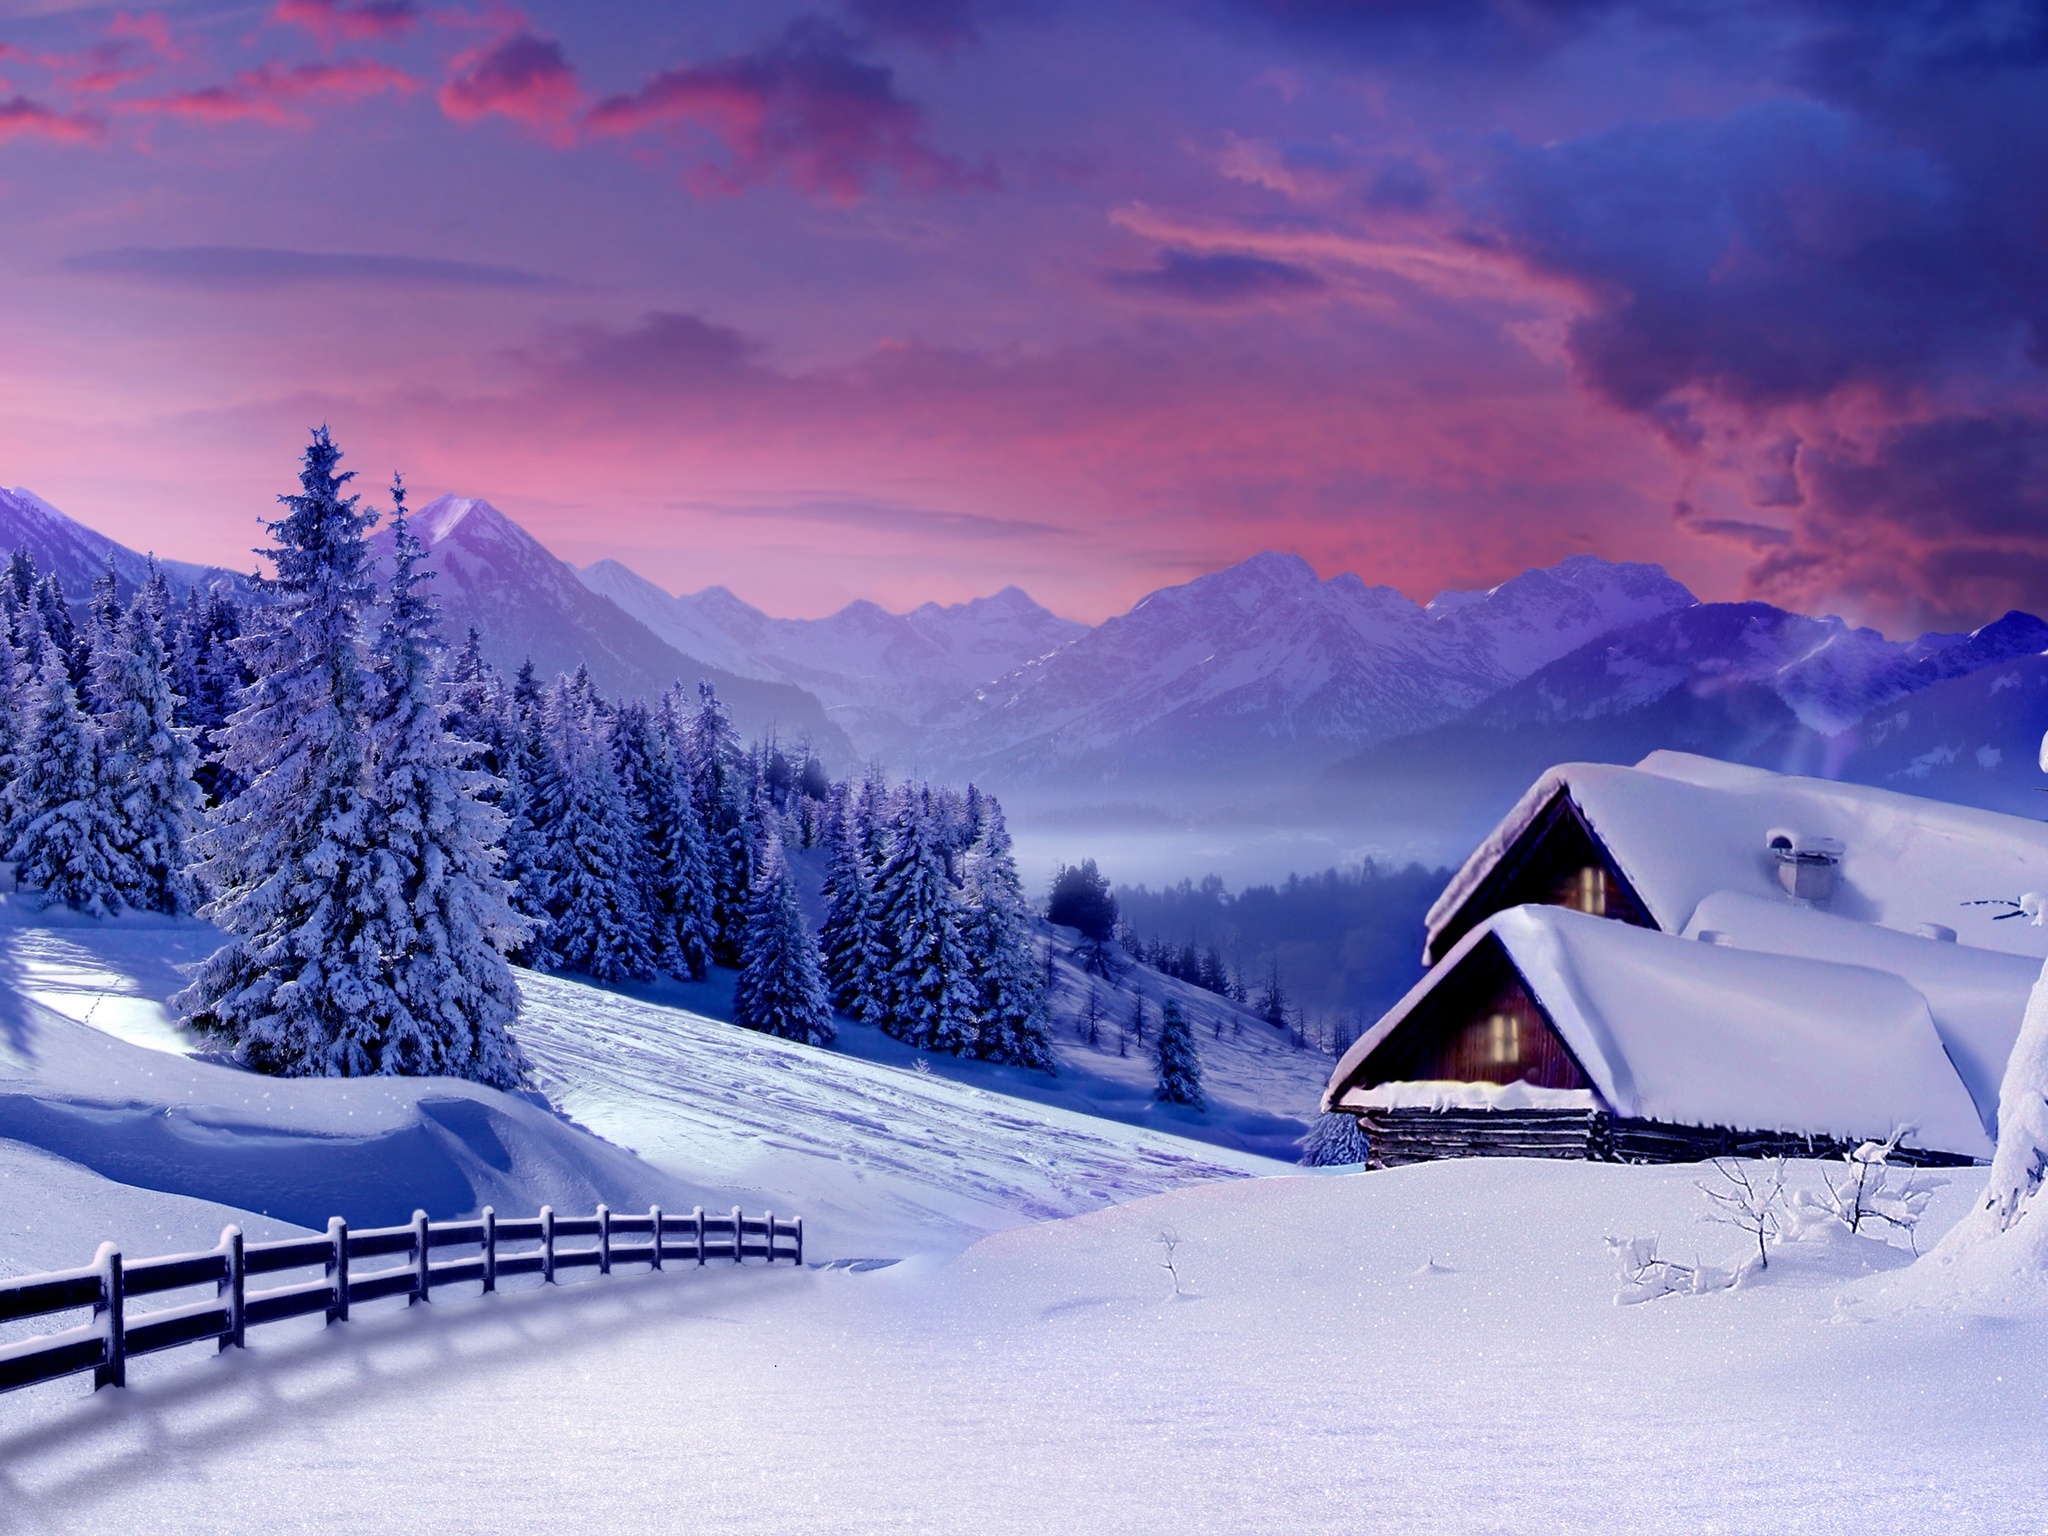 Winter Landscape 4k Ultra HD Wallpaper